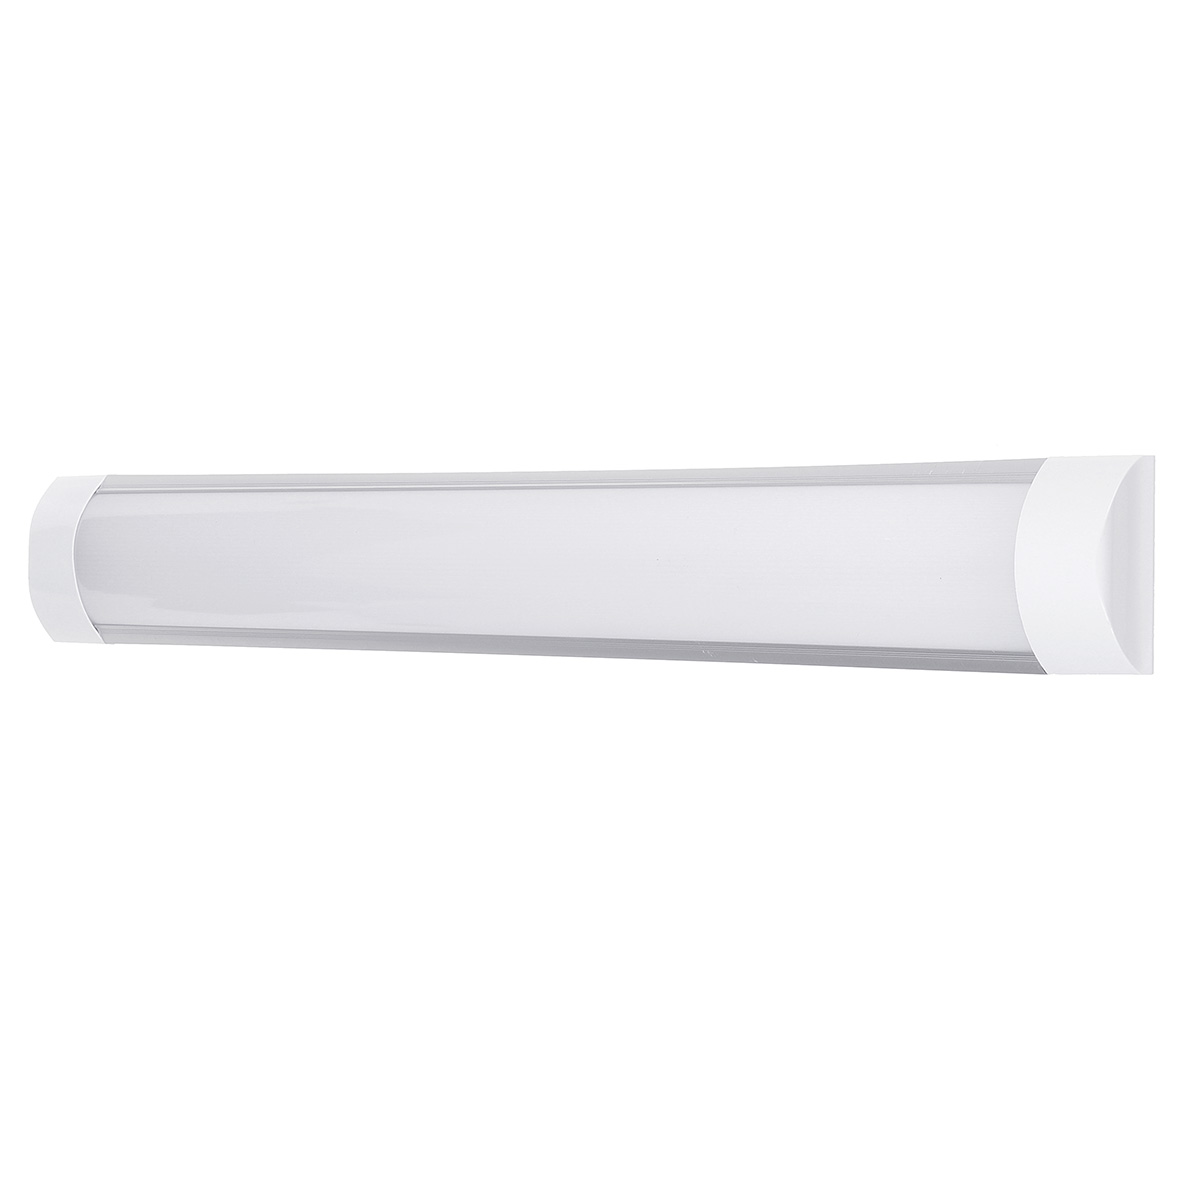 6Pcs-2FT-LED-Batten-Tube-Light-For-Garage-Workshop-Ceiling-Panel-Wall-Lamp-1730495-4